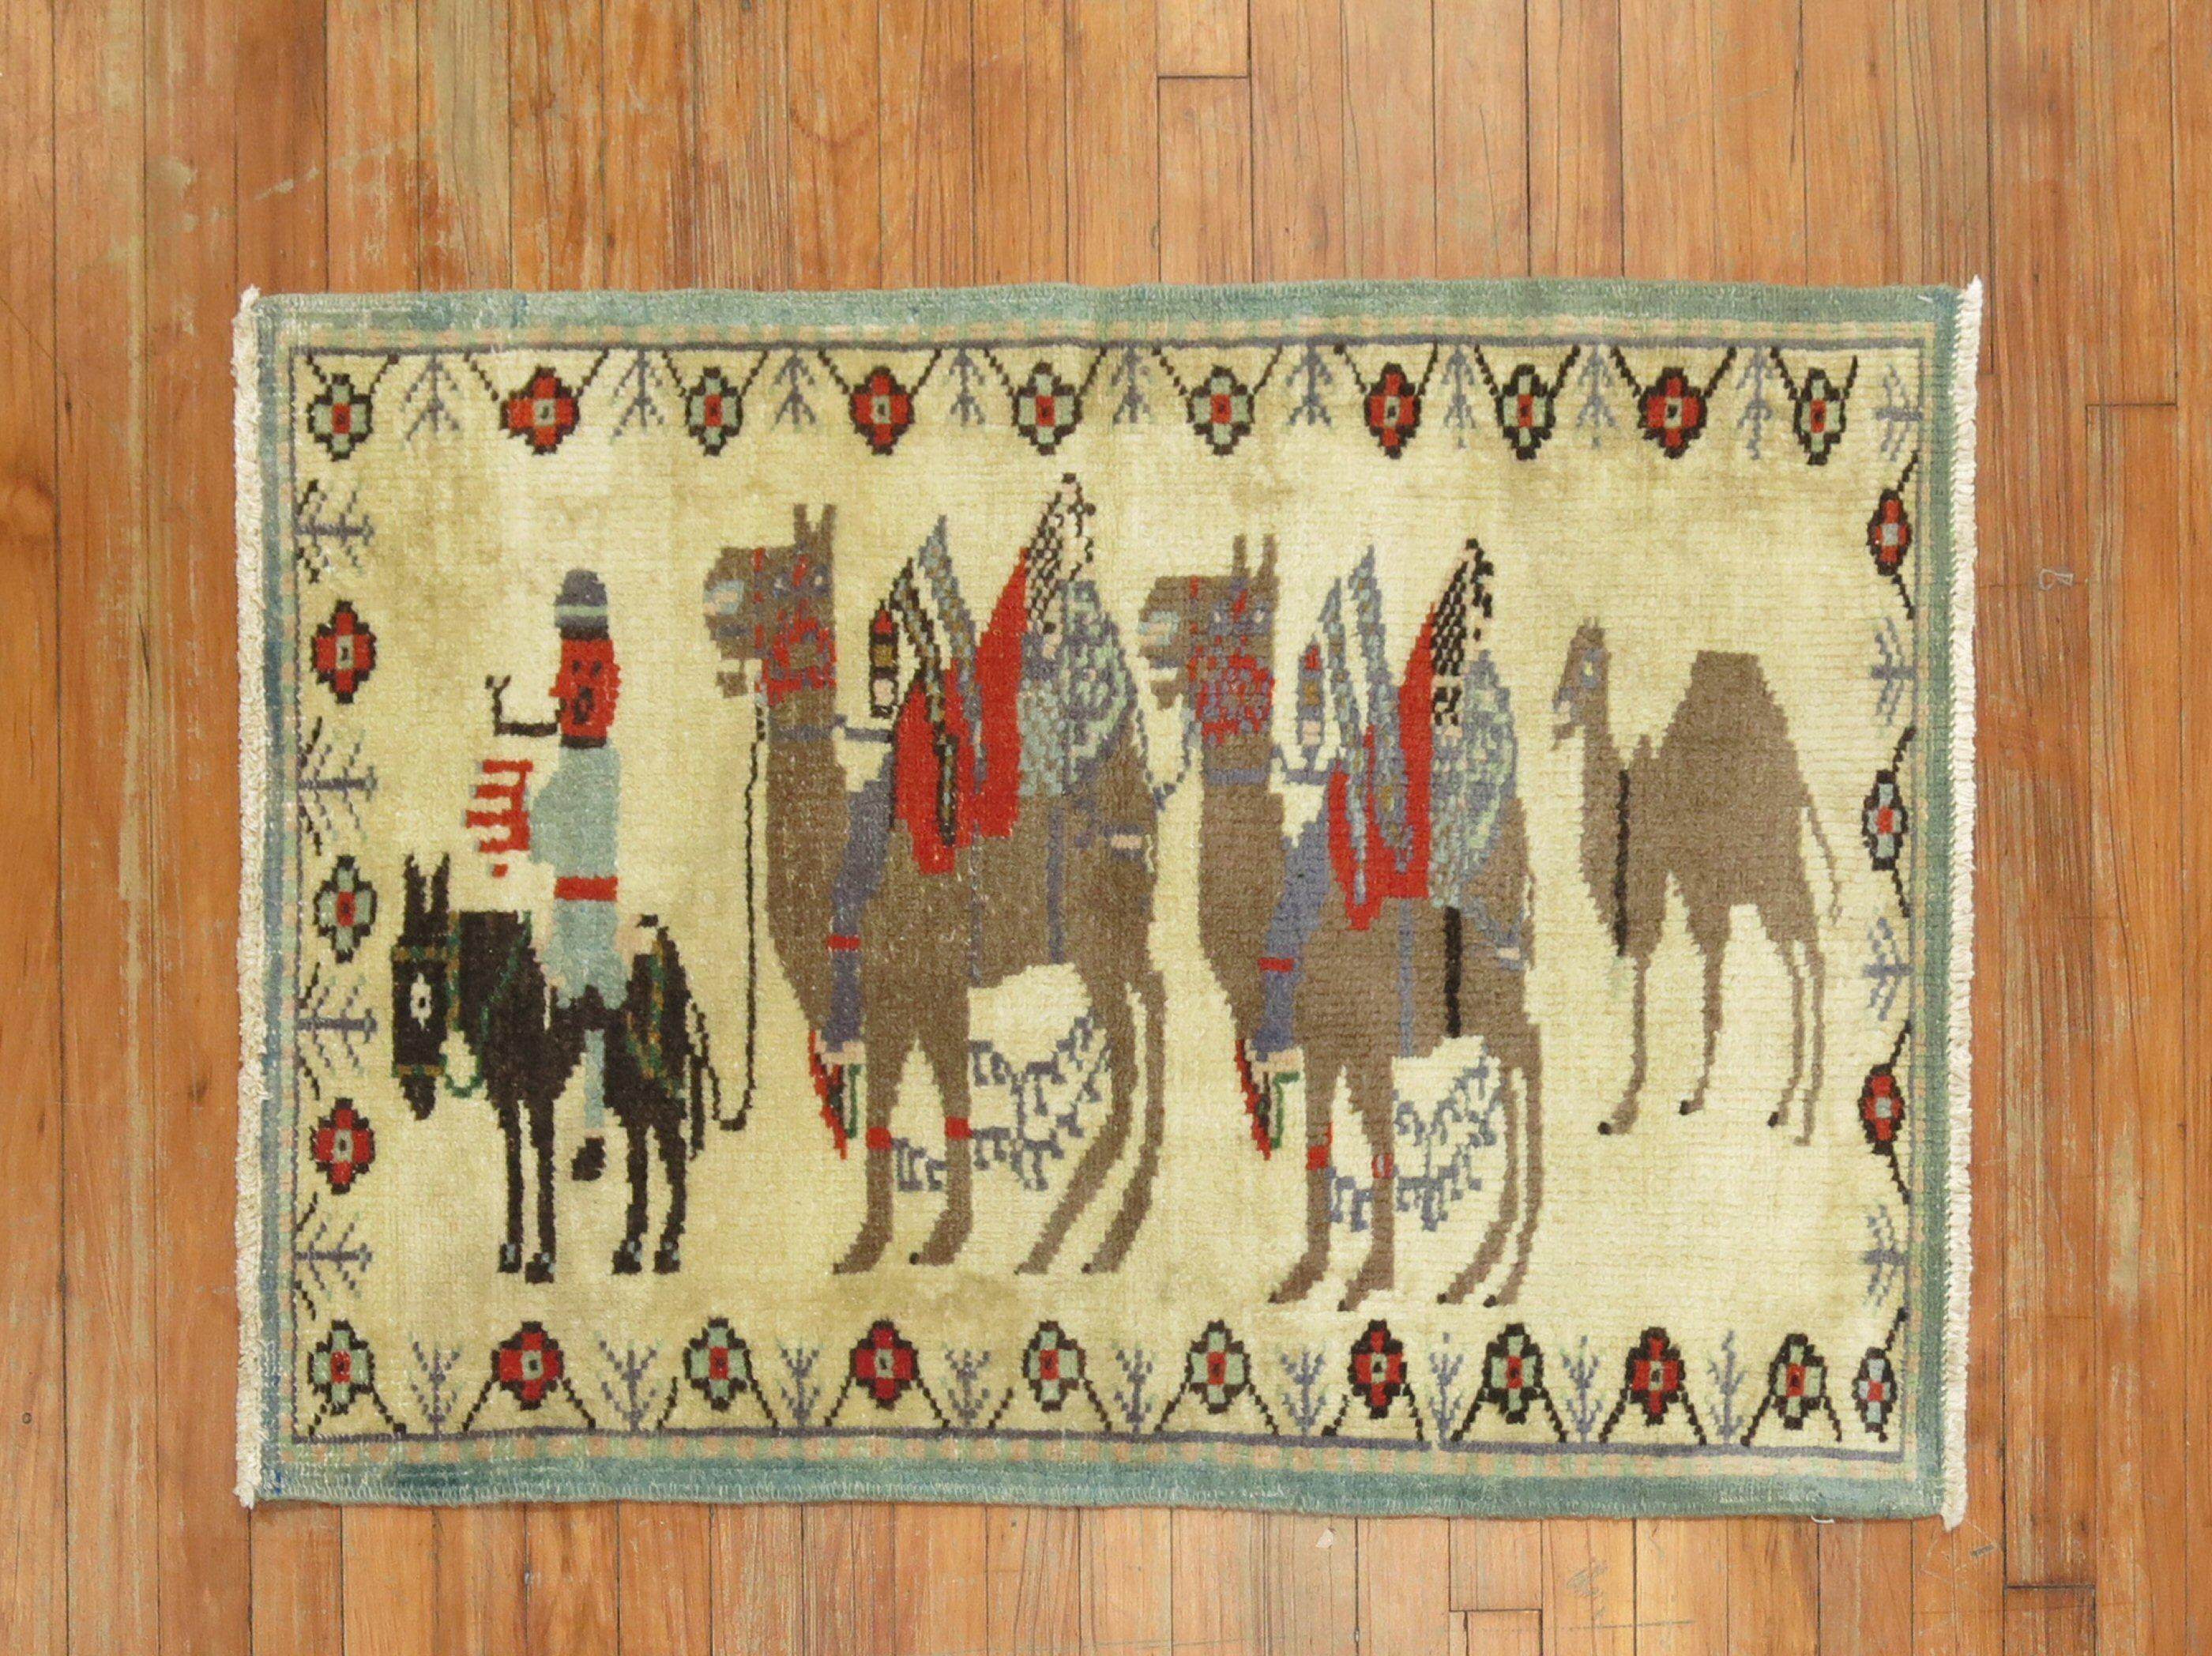 Ein handgeknüpfter türkischer Teppich aus der Mitte des 20. Jahrhunderts mit 3 braunen Kamelen, die an einem kleinen schwarzen Pferd hängen, und einer menschlichen Figur

Einzelheiten
Teppich nein.	31332
Größe	2' 5